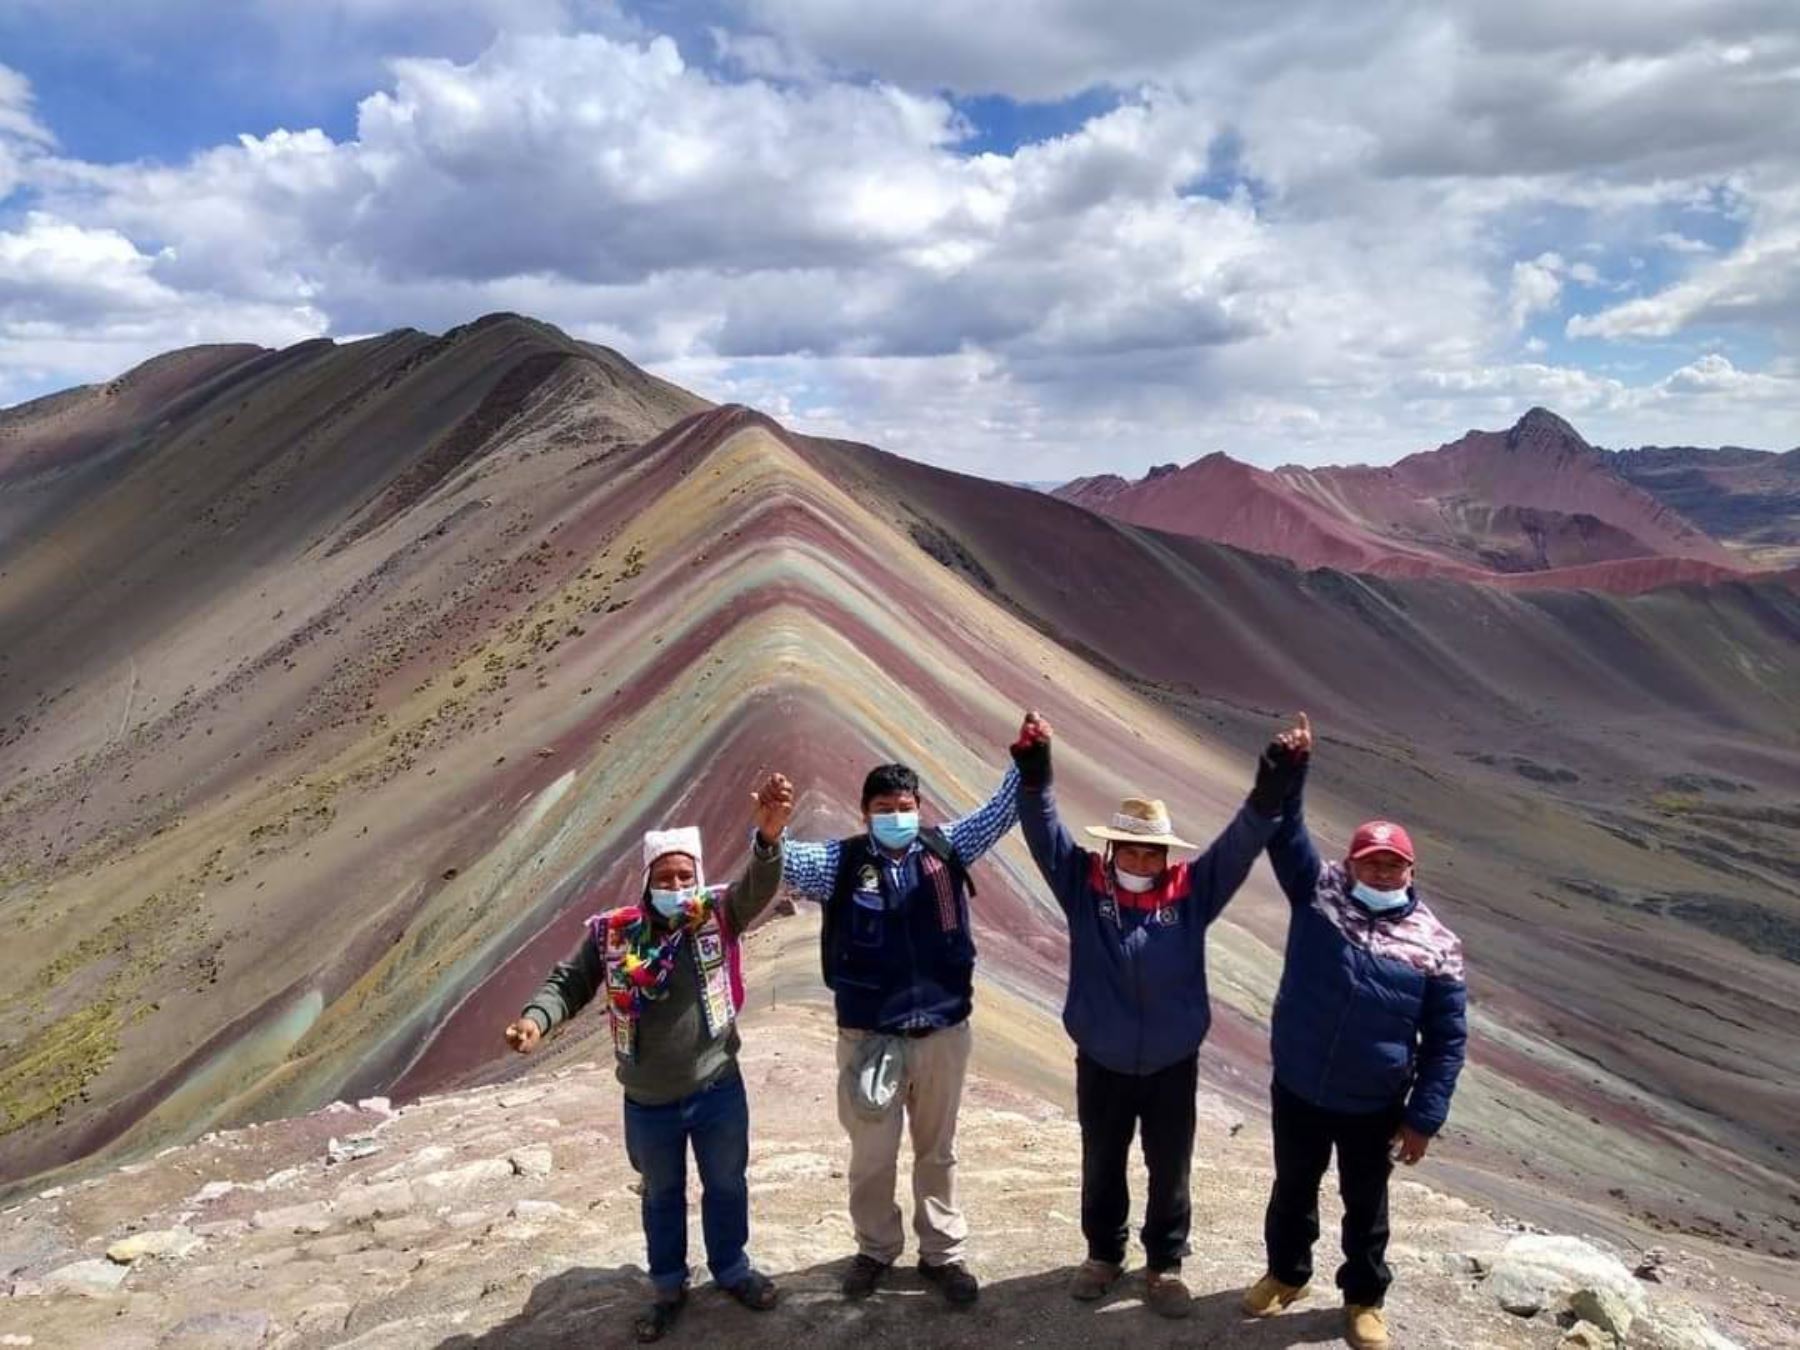 La próxima semana se reanuda el turismo a la montaña de colores Vinicunca, el segundo destino turístico más visitado de Cusco. ANDINA/Difusión